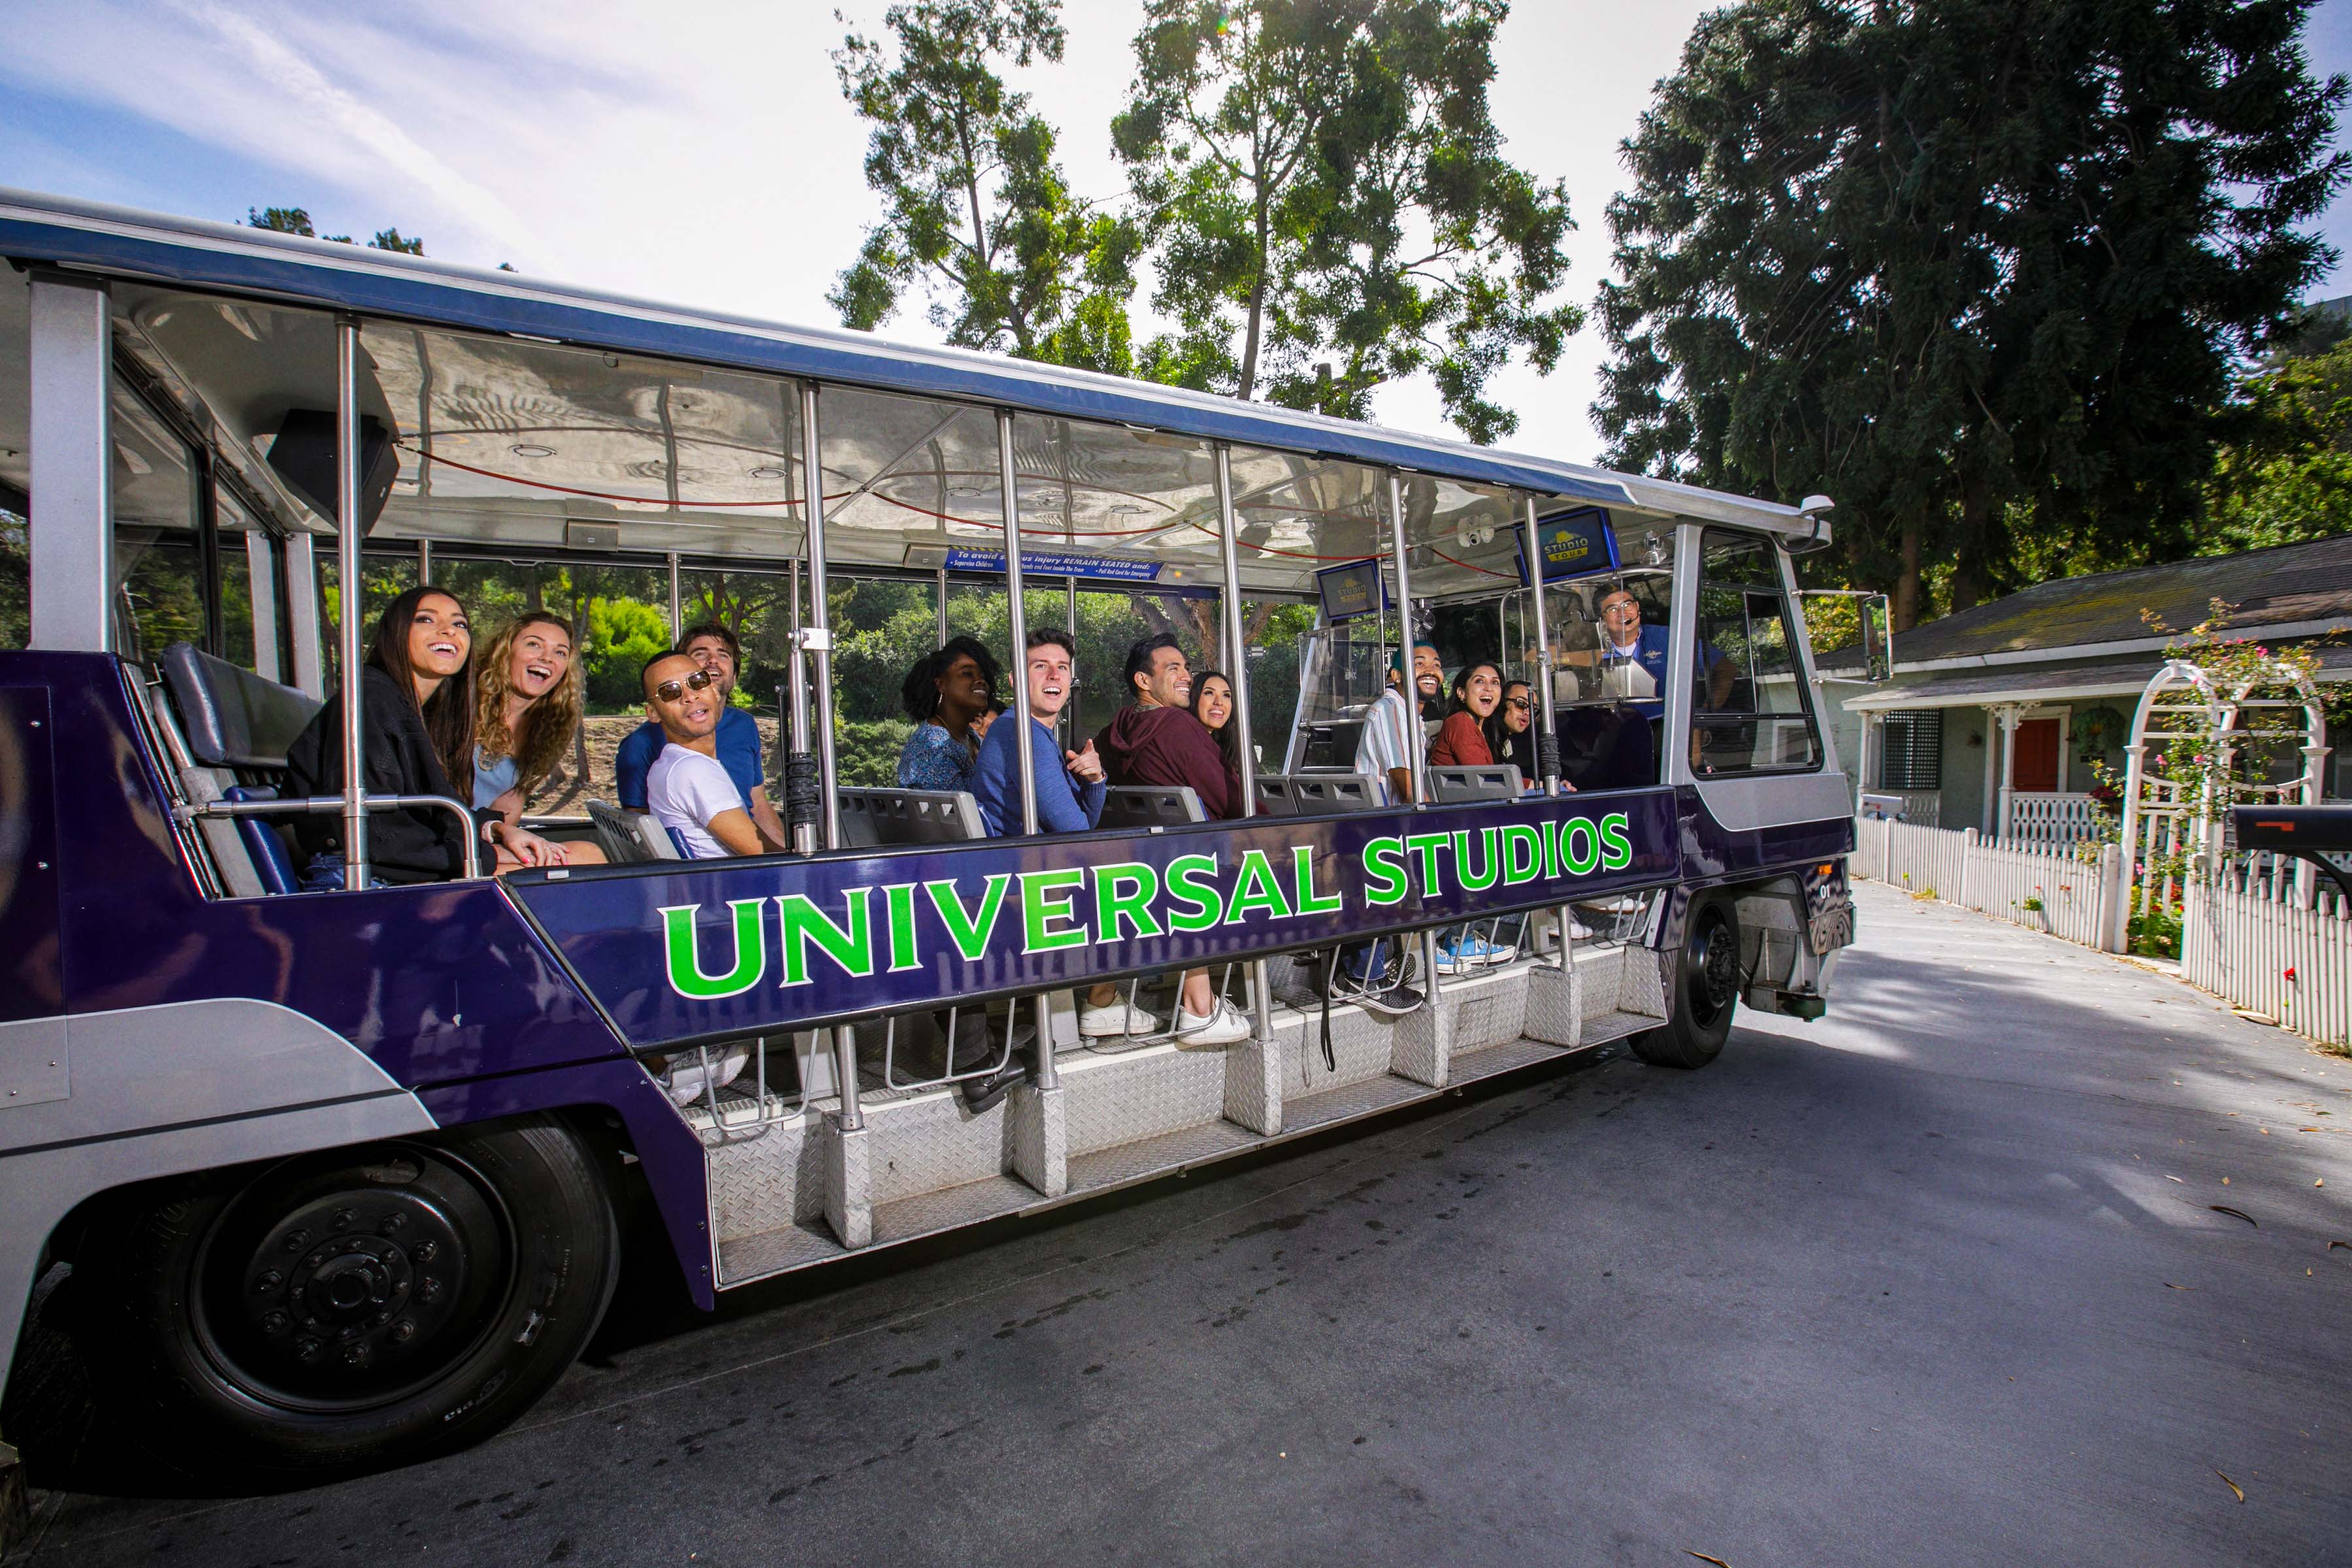 Universal Studios Hollywood lanza los primeros cuatro tranvías eléctricos en su flota de 21 vehículos del Studio Tour